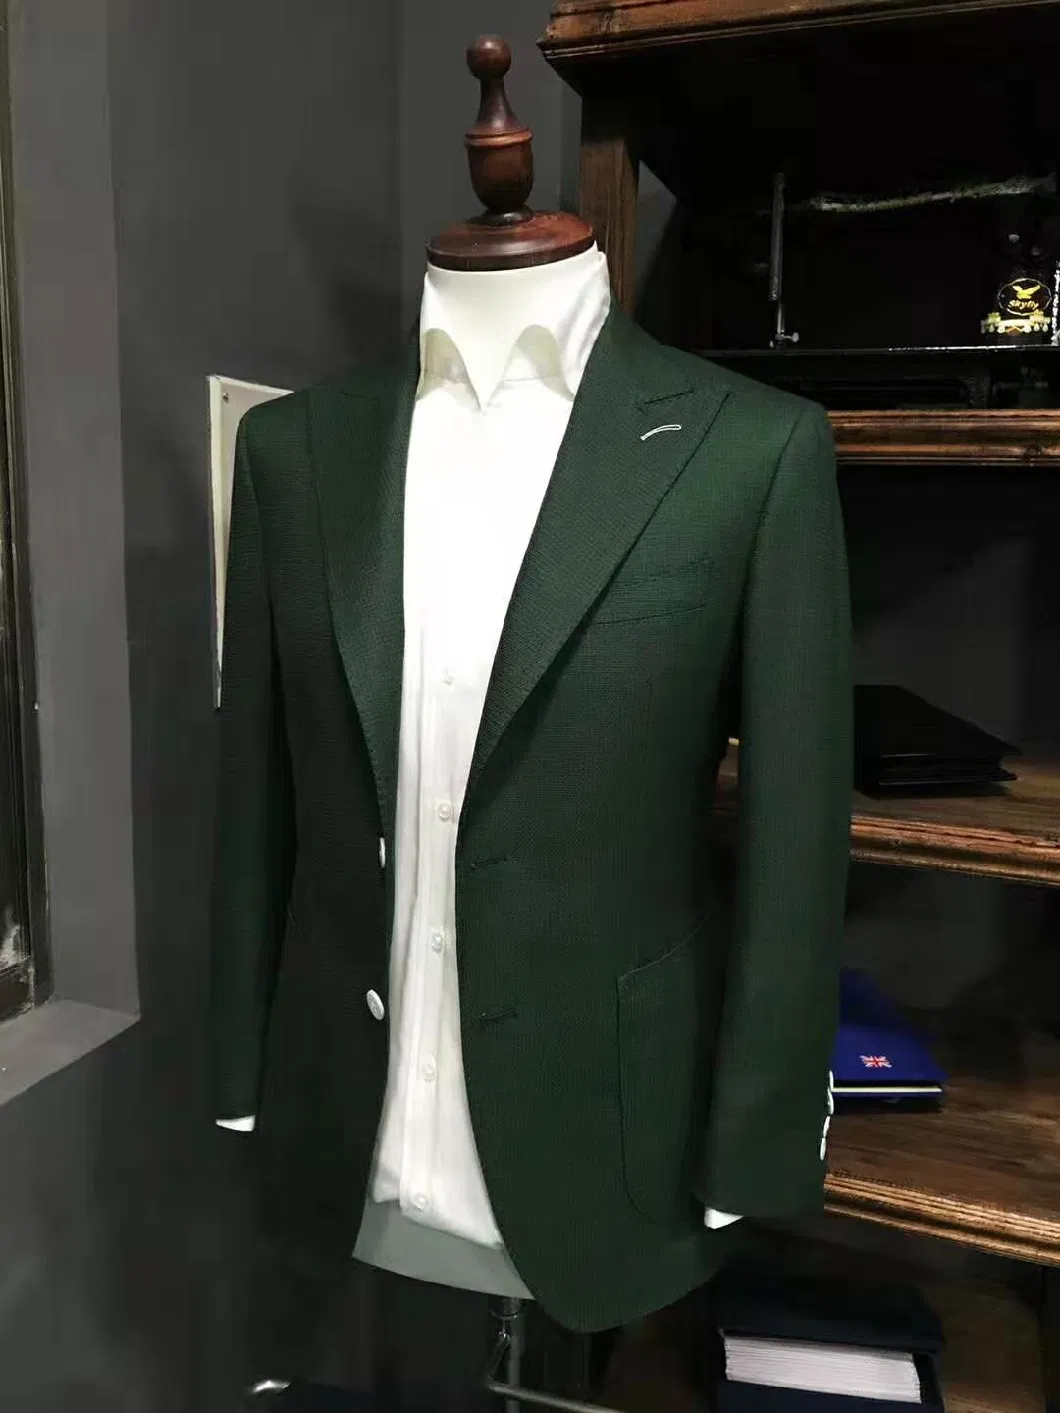 Mtm Men Suits Wedding Suit Elegent Apparel Jacket Blazer